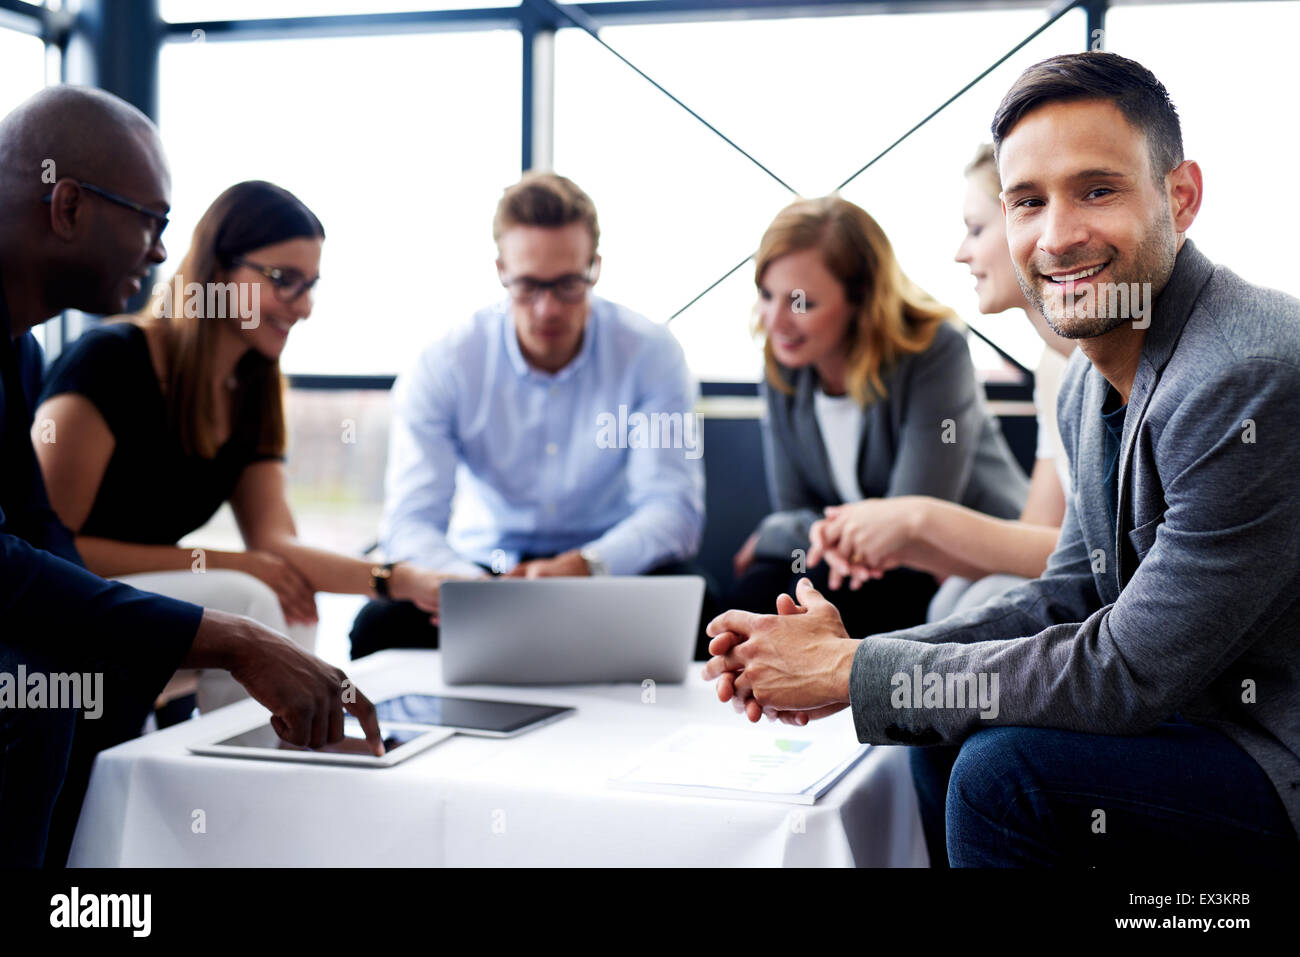 White male executive sitting and smiling at camera au cours d'une réunion avec des collègues Banque D'Images